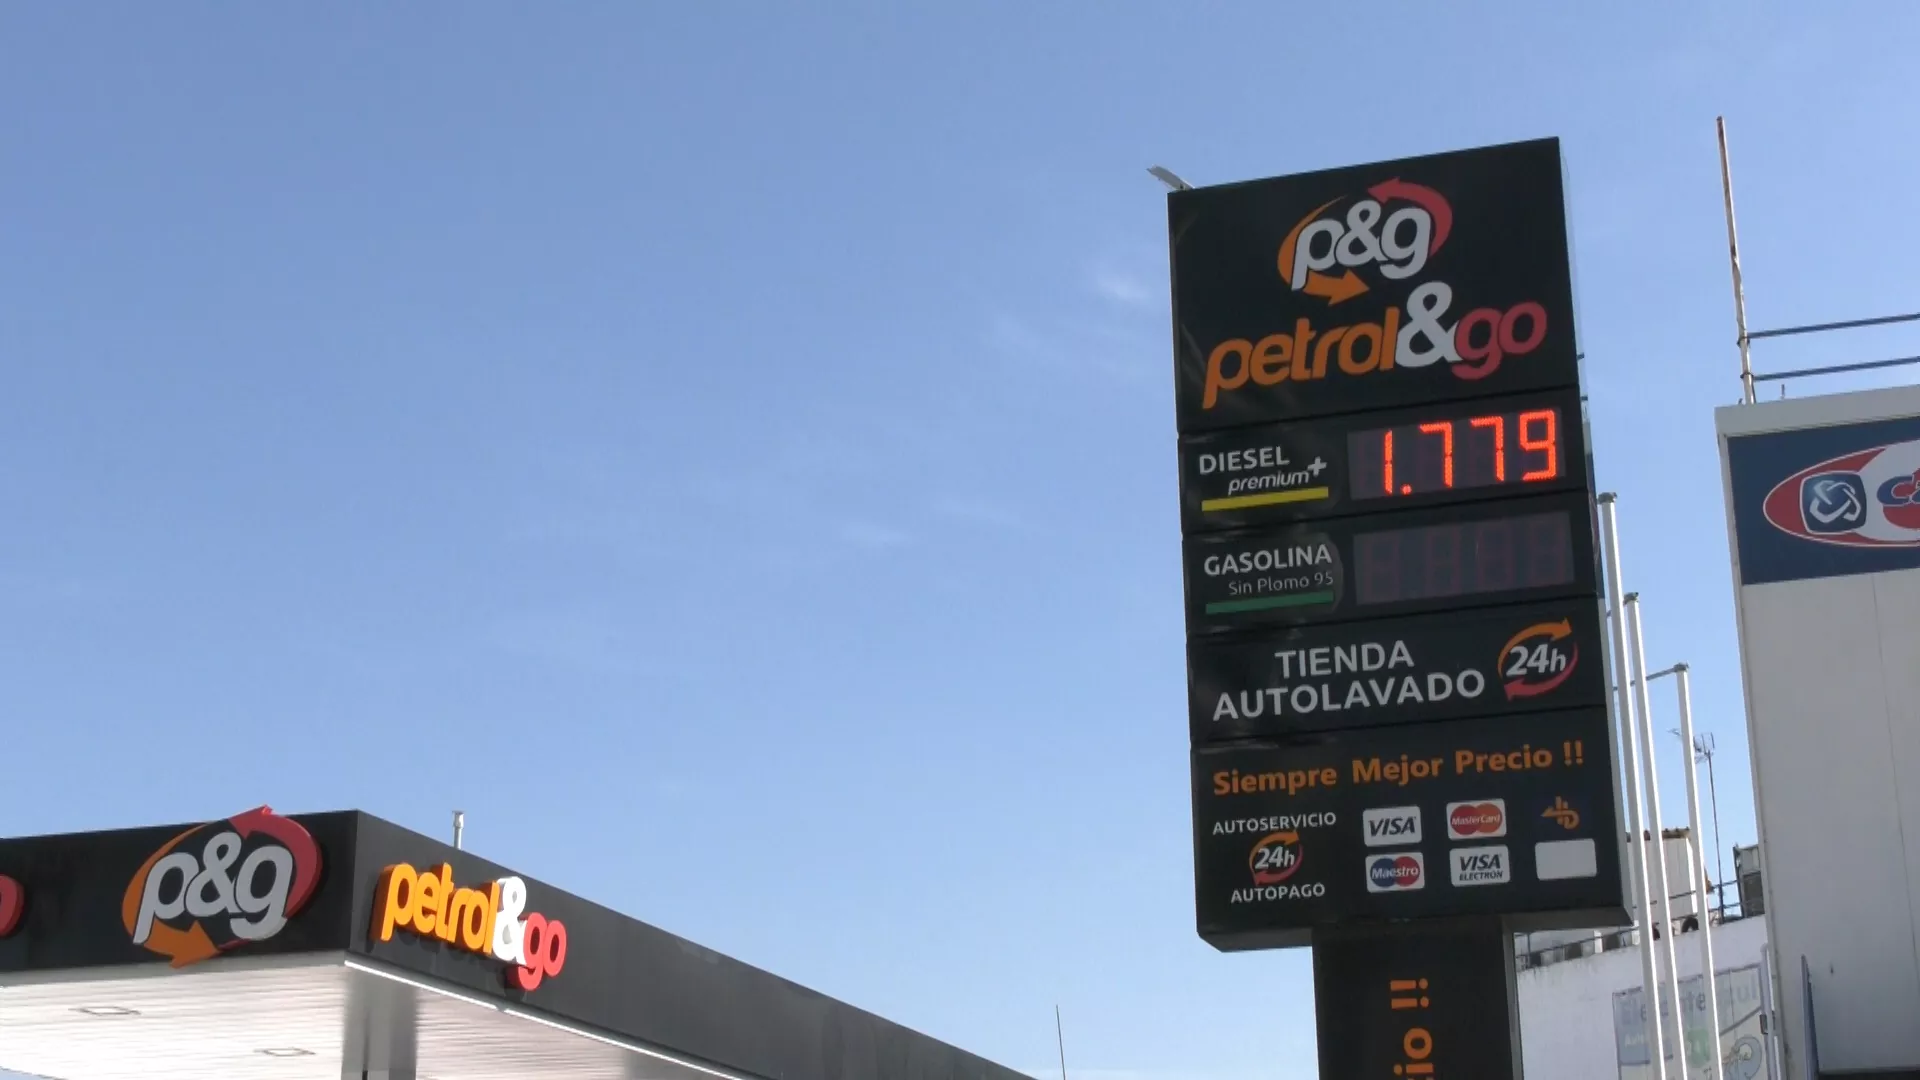 La rebaja de 20 céntimos del precio del litro de gasolina se amplia al mes de octubre